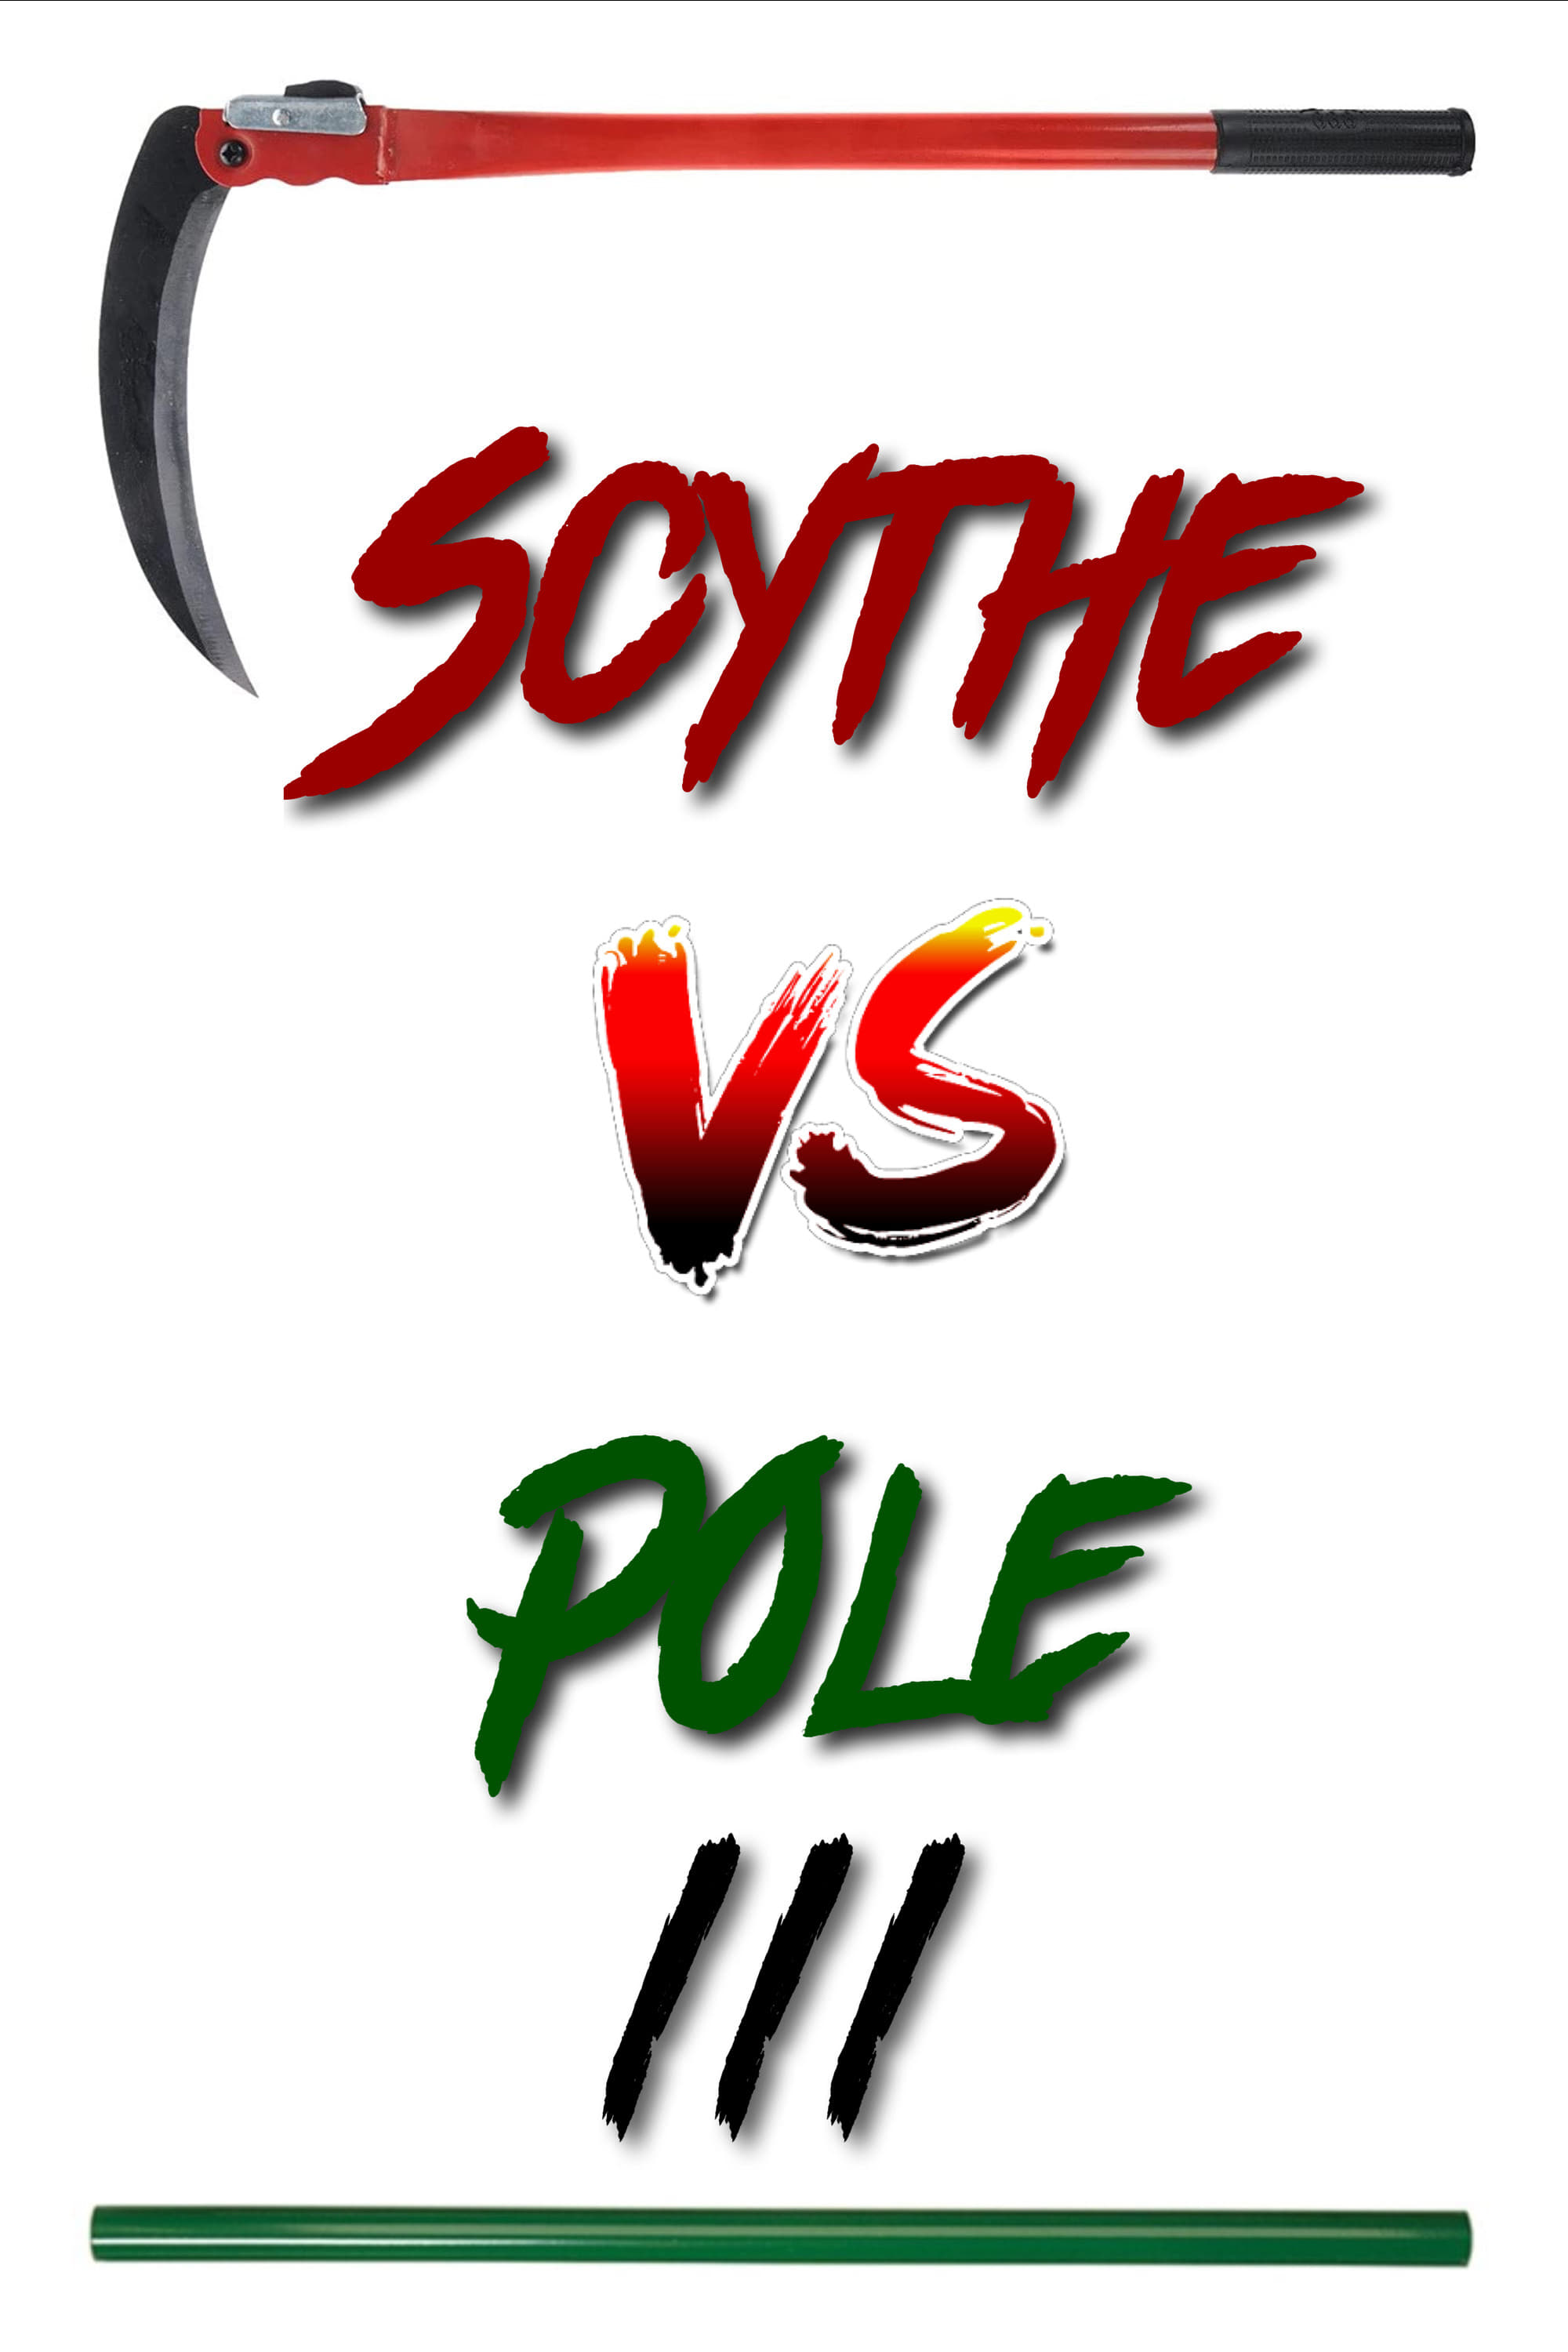 Scythe vs Pole 3